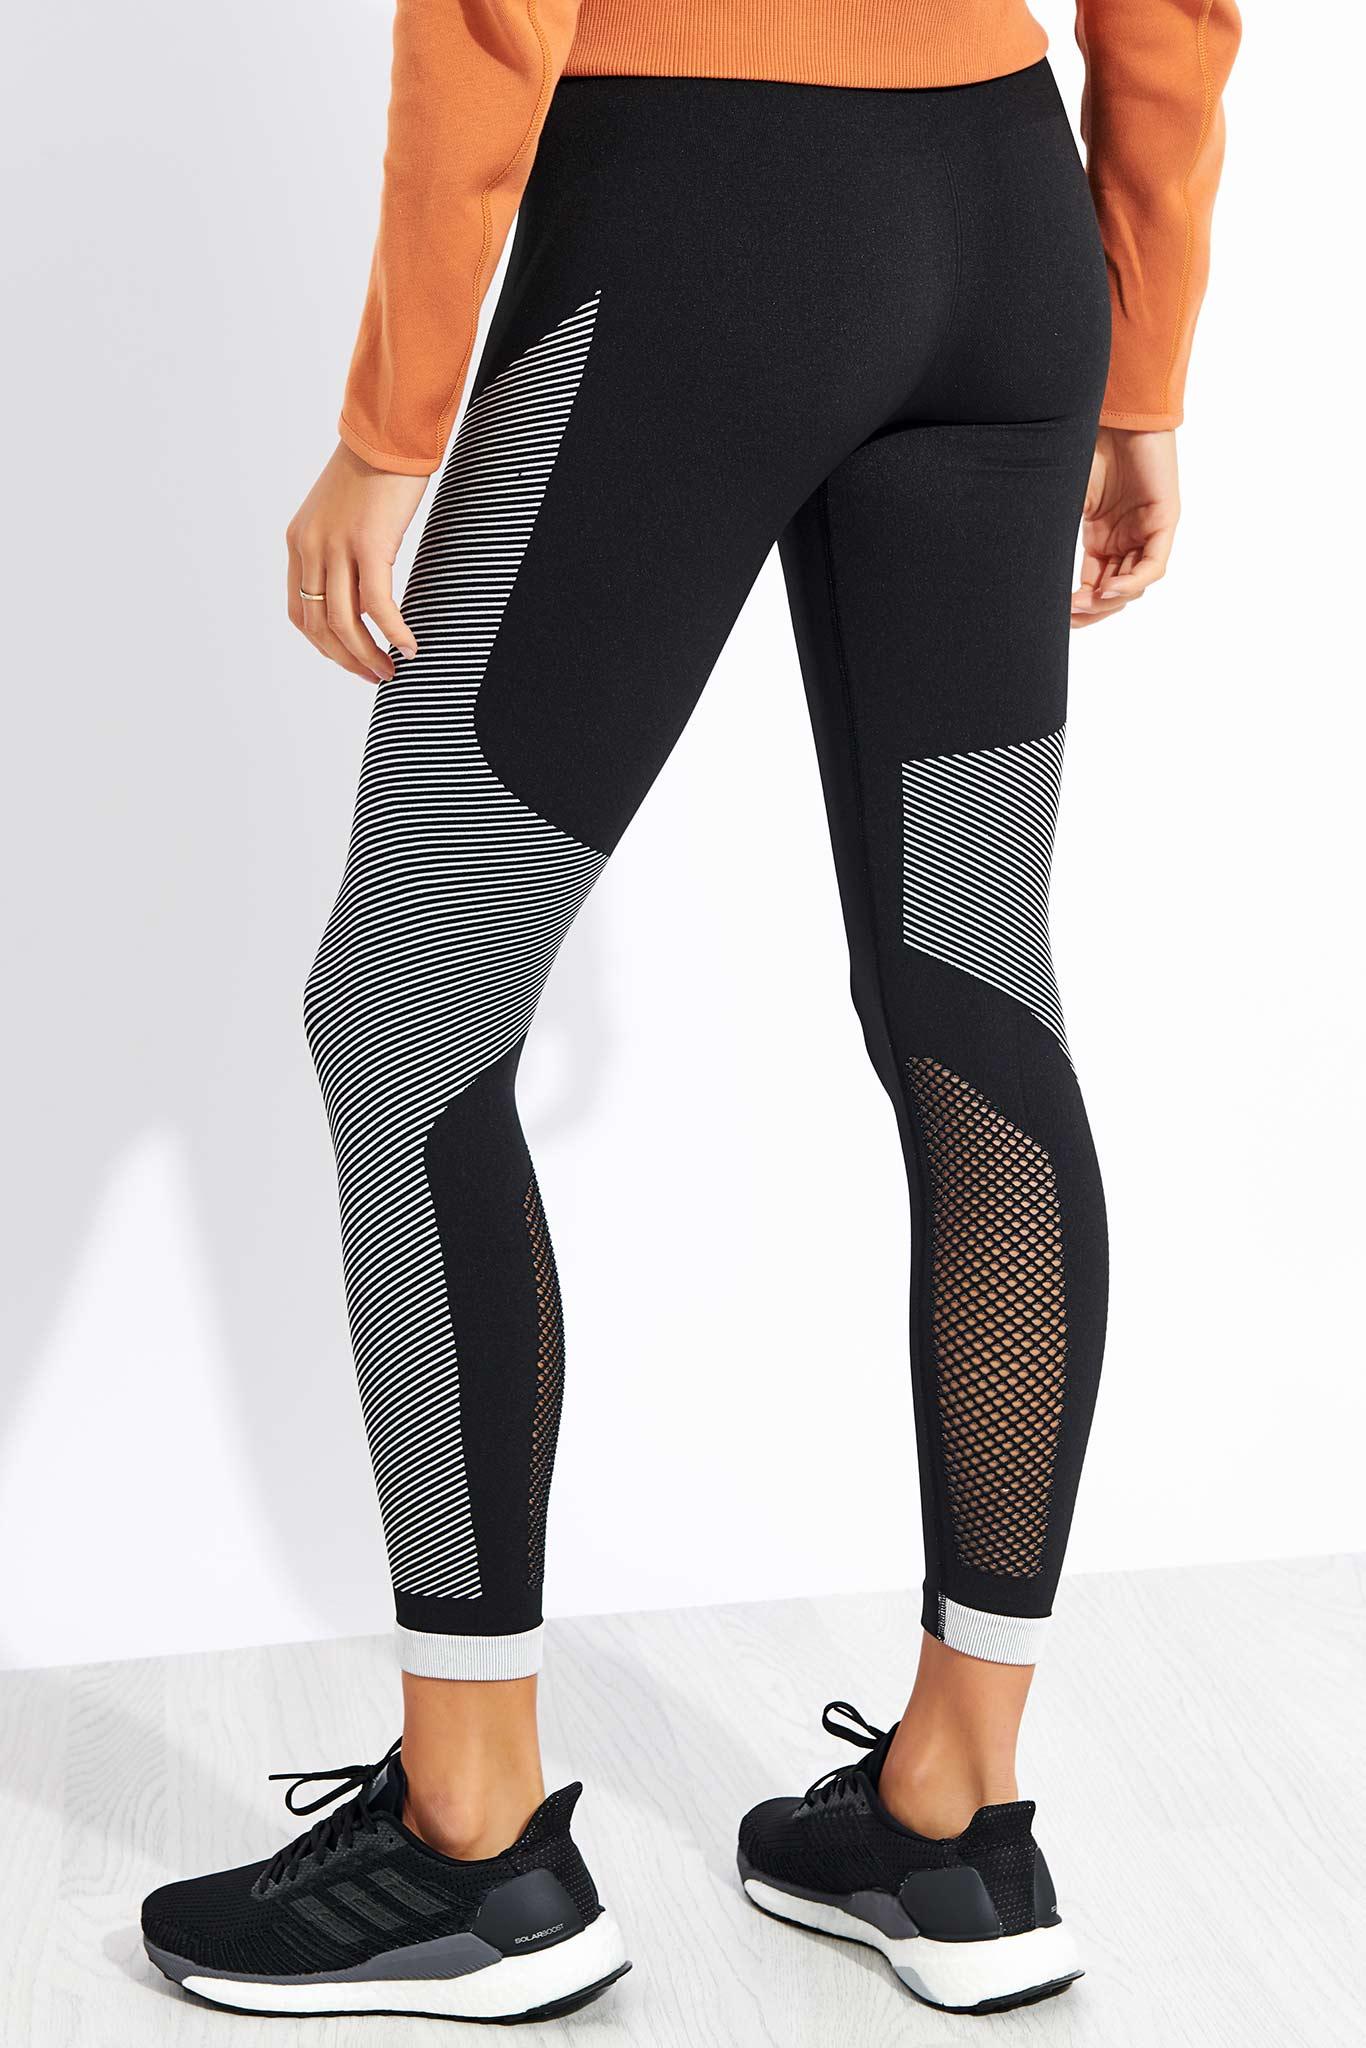 adidas Believe This Primeknit Flw leggings in Black | Lyst UK